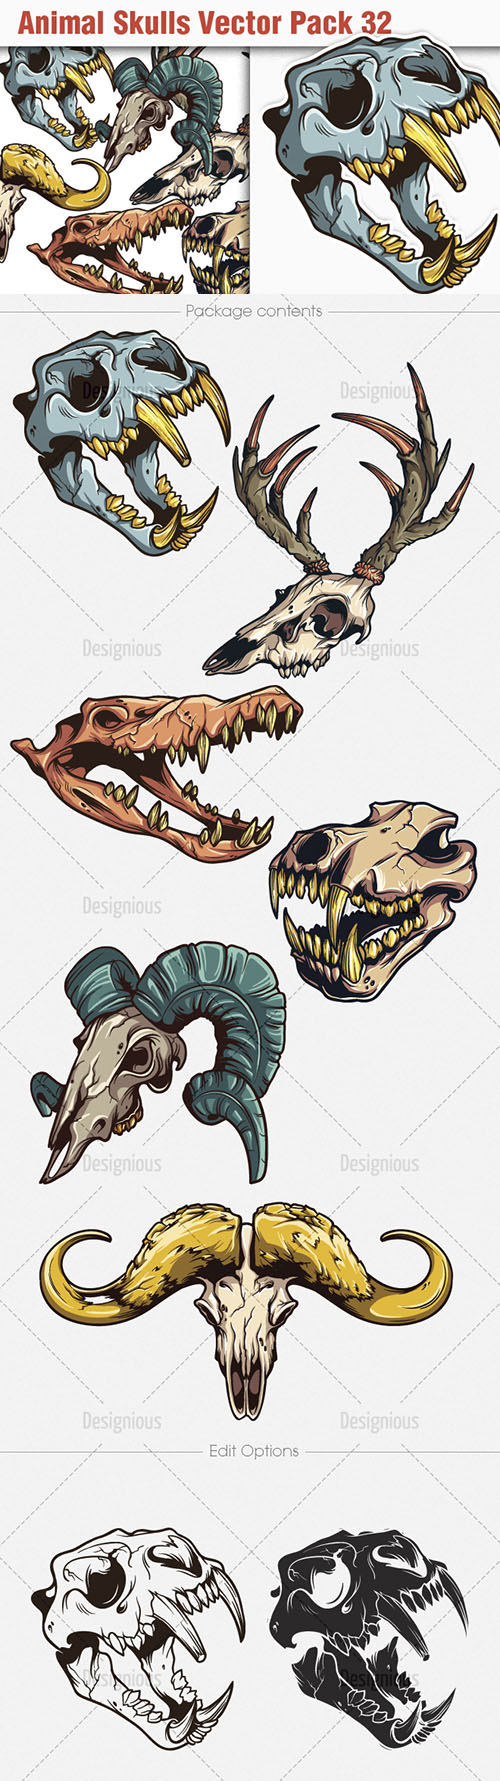 Animal Skulls Vector Illustrations Pack 32